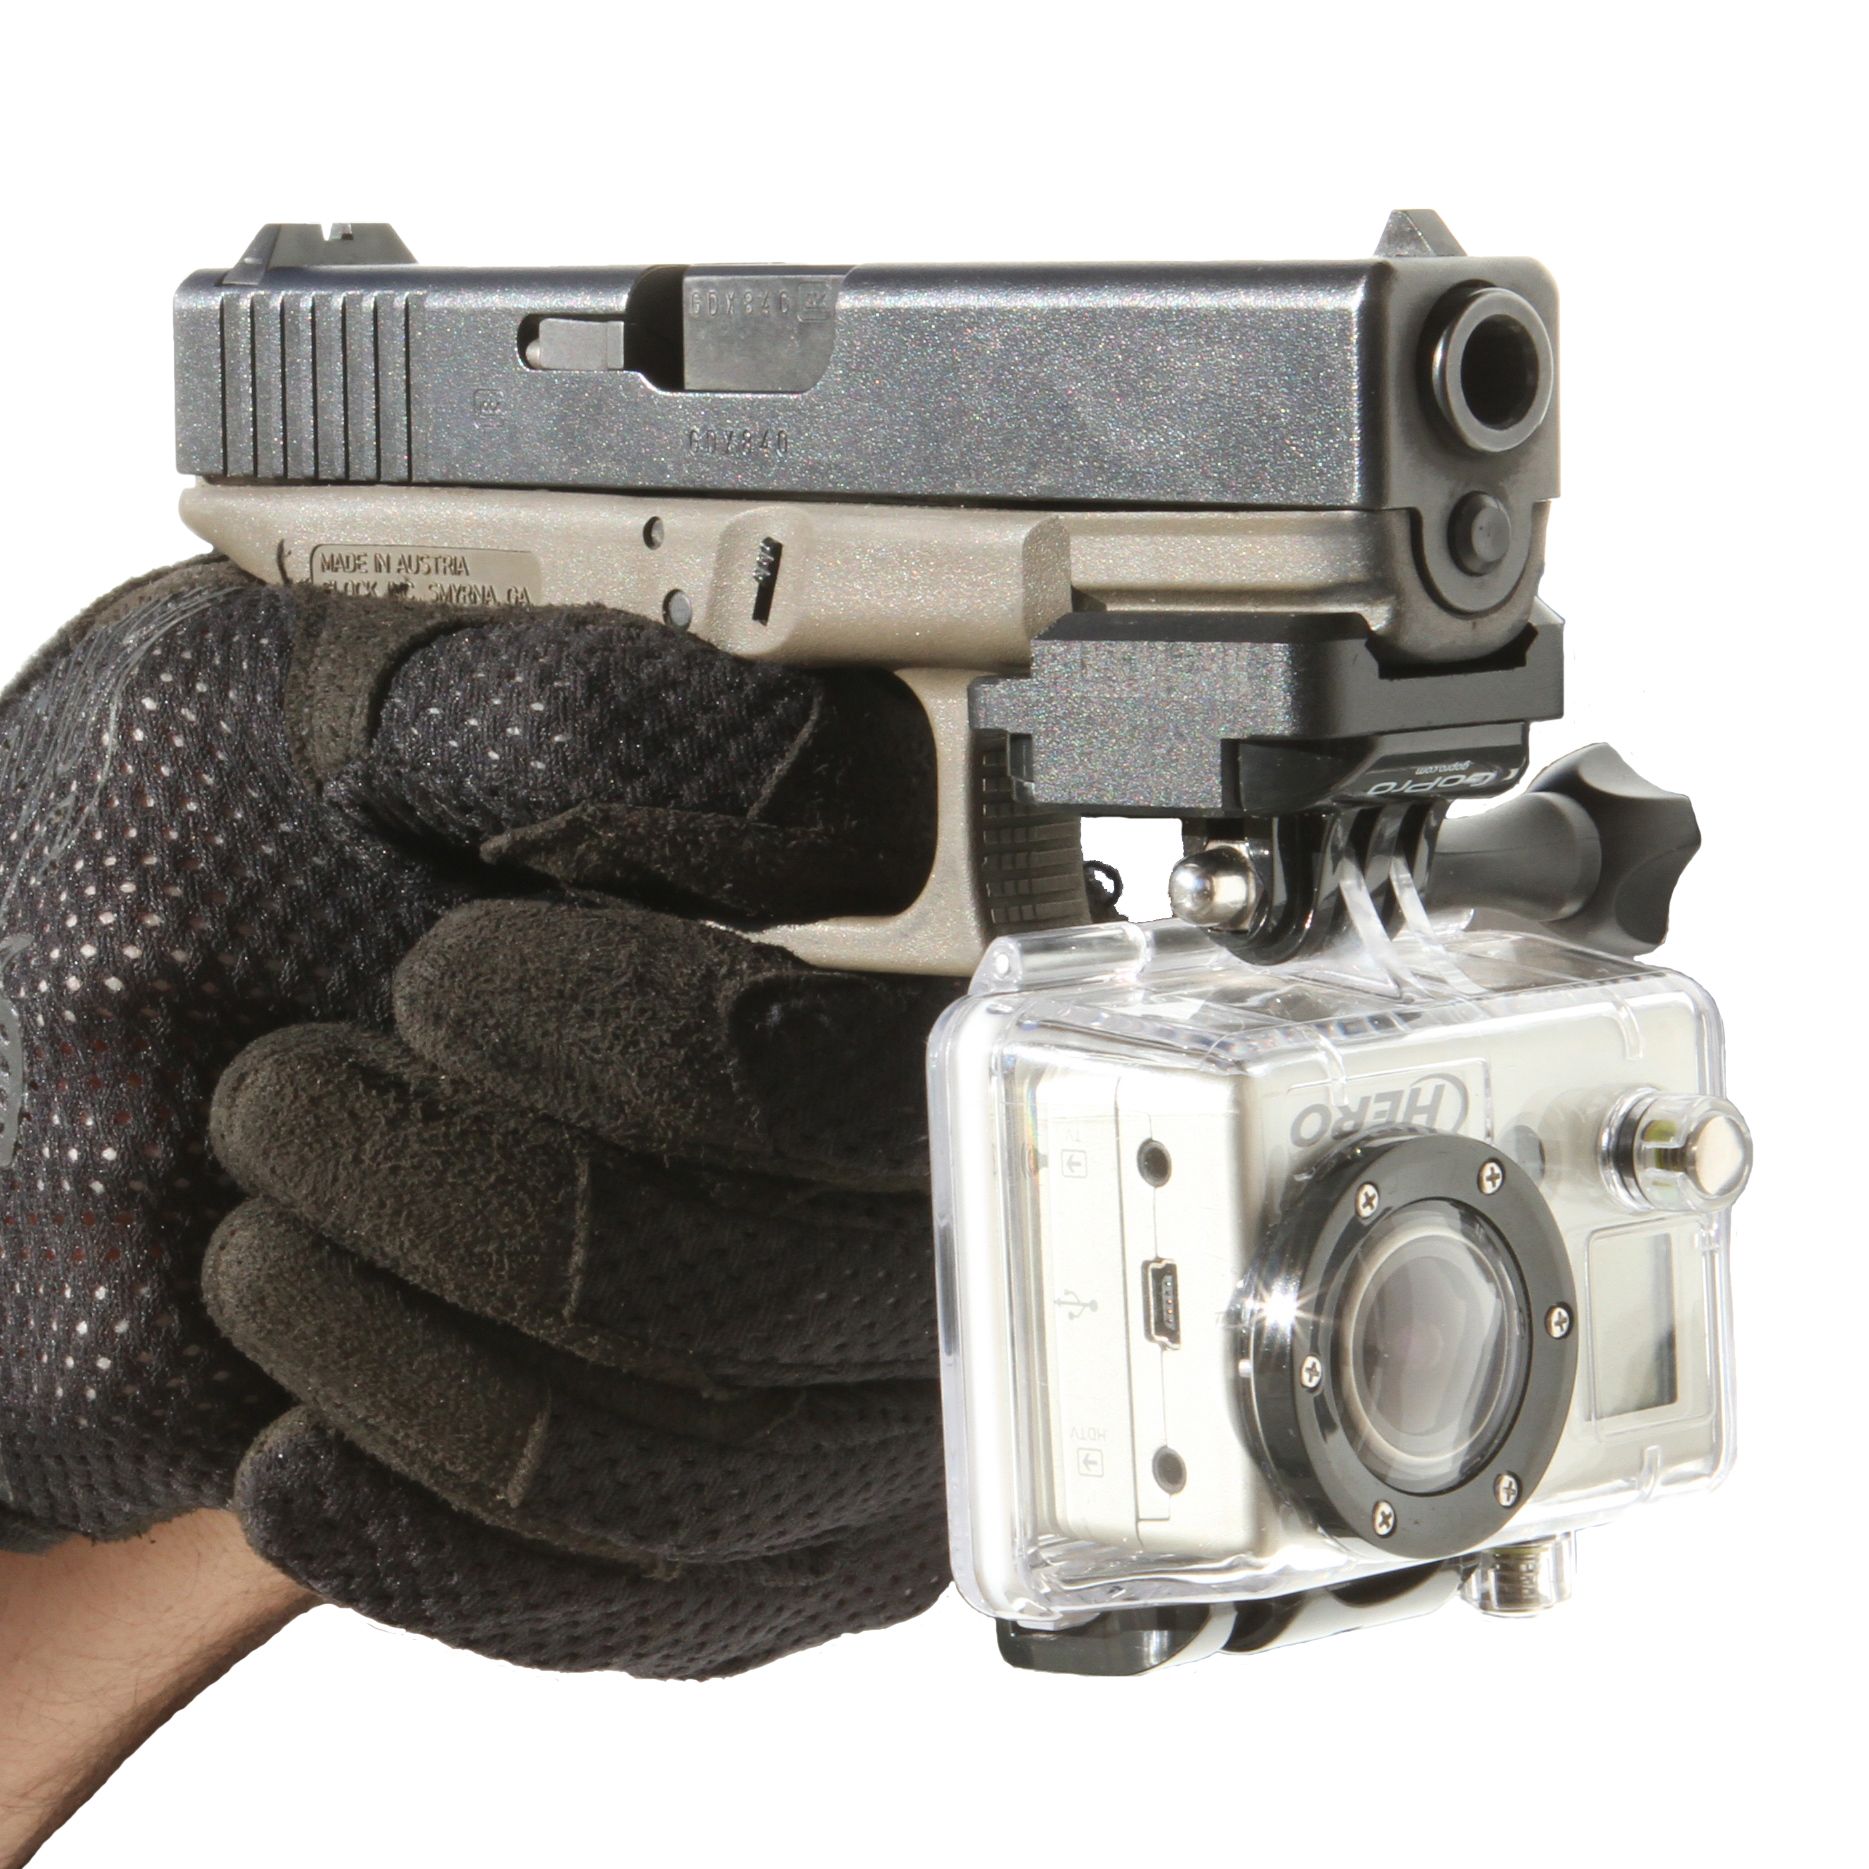 Departamentos de policías en EEUU agregan cámaras a las armas en busca de transparencia